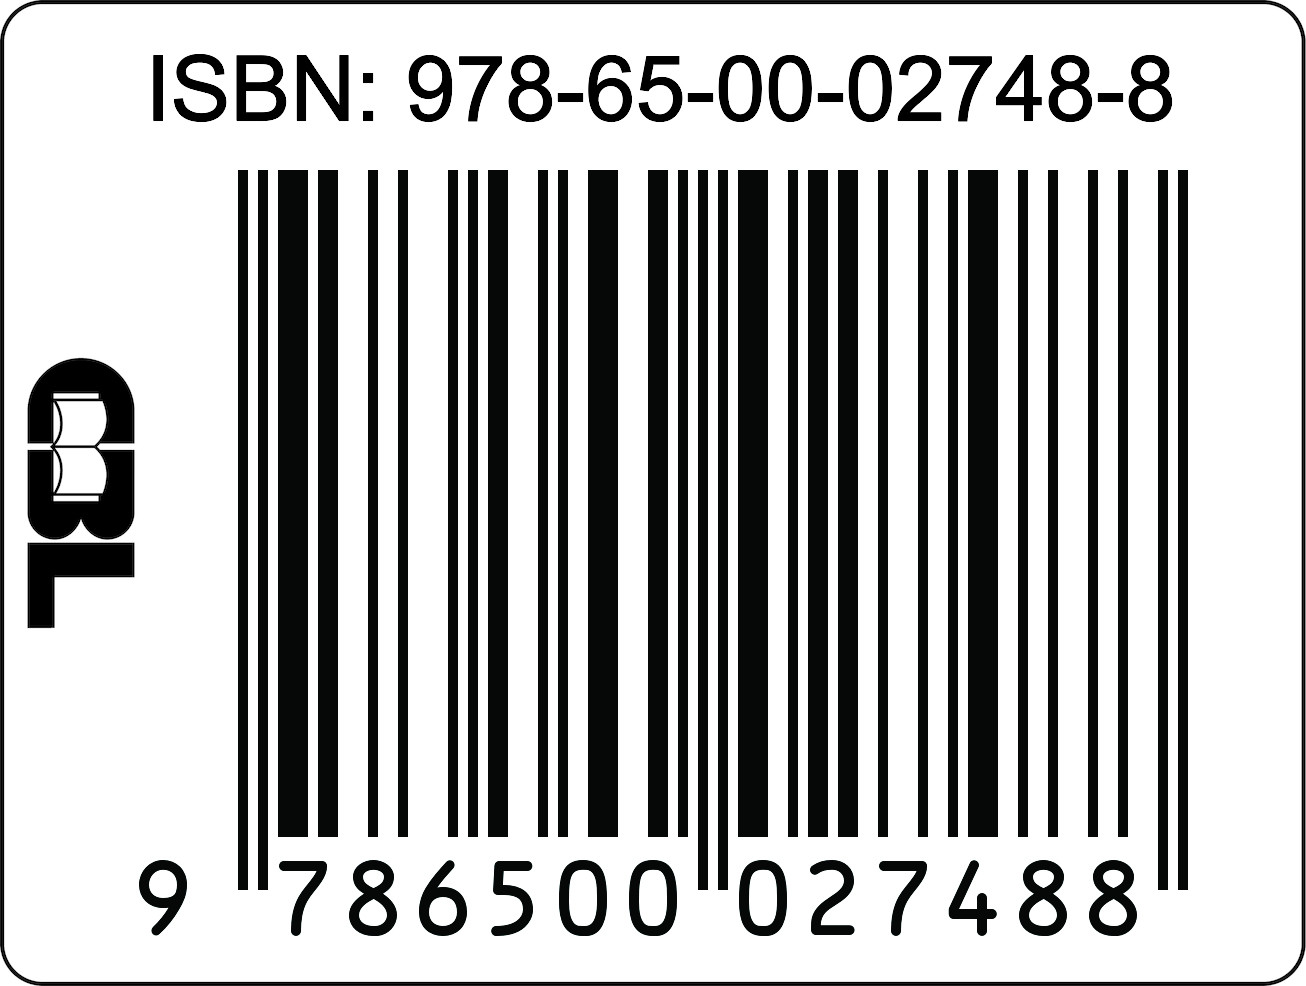 ISBN-Digital